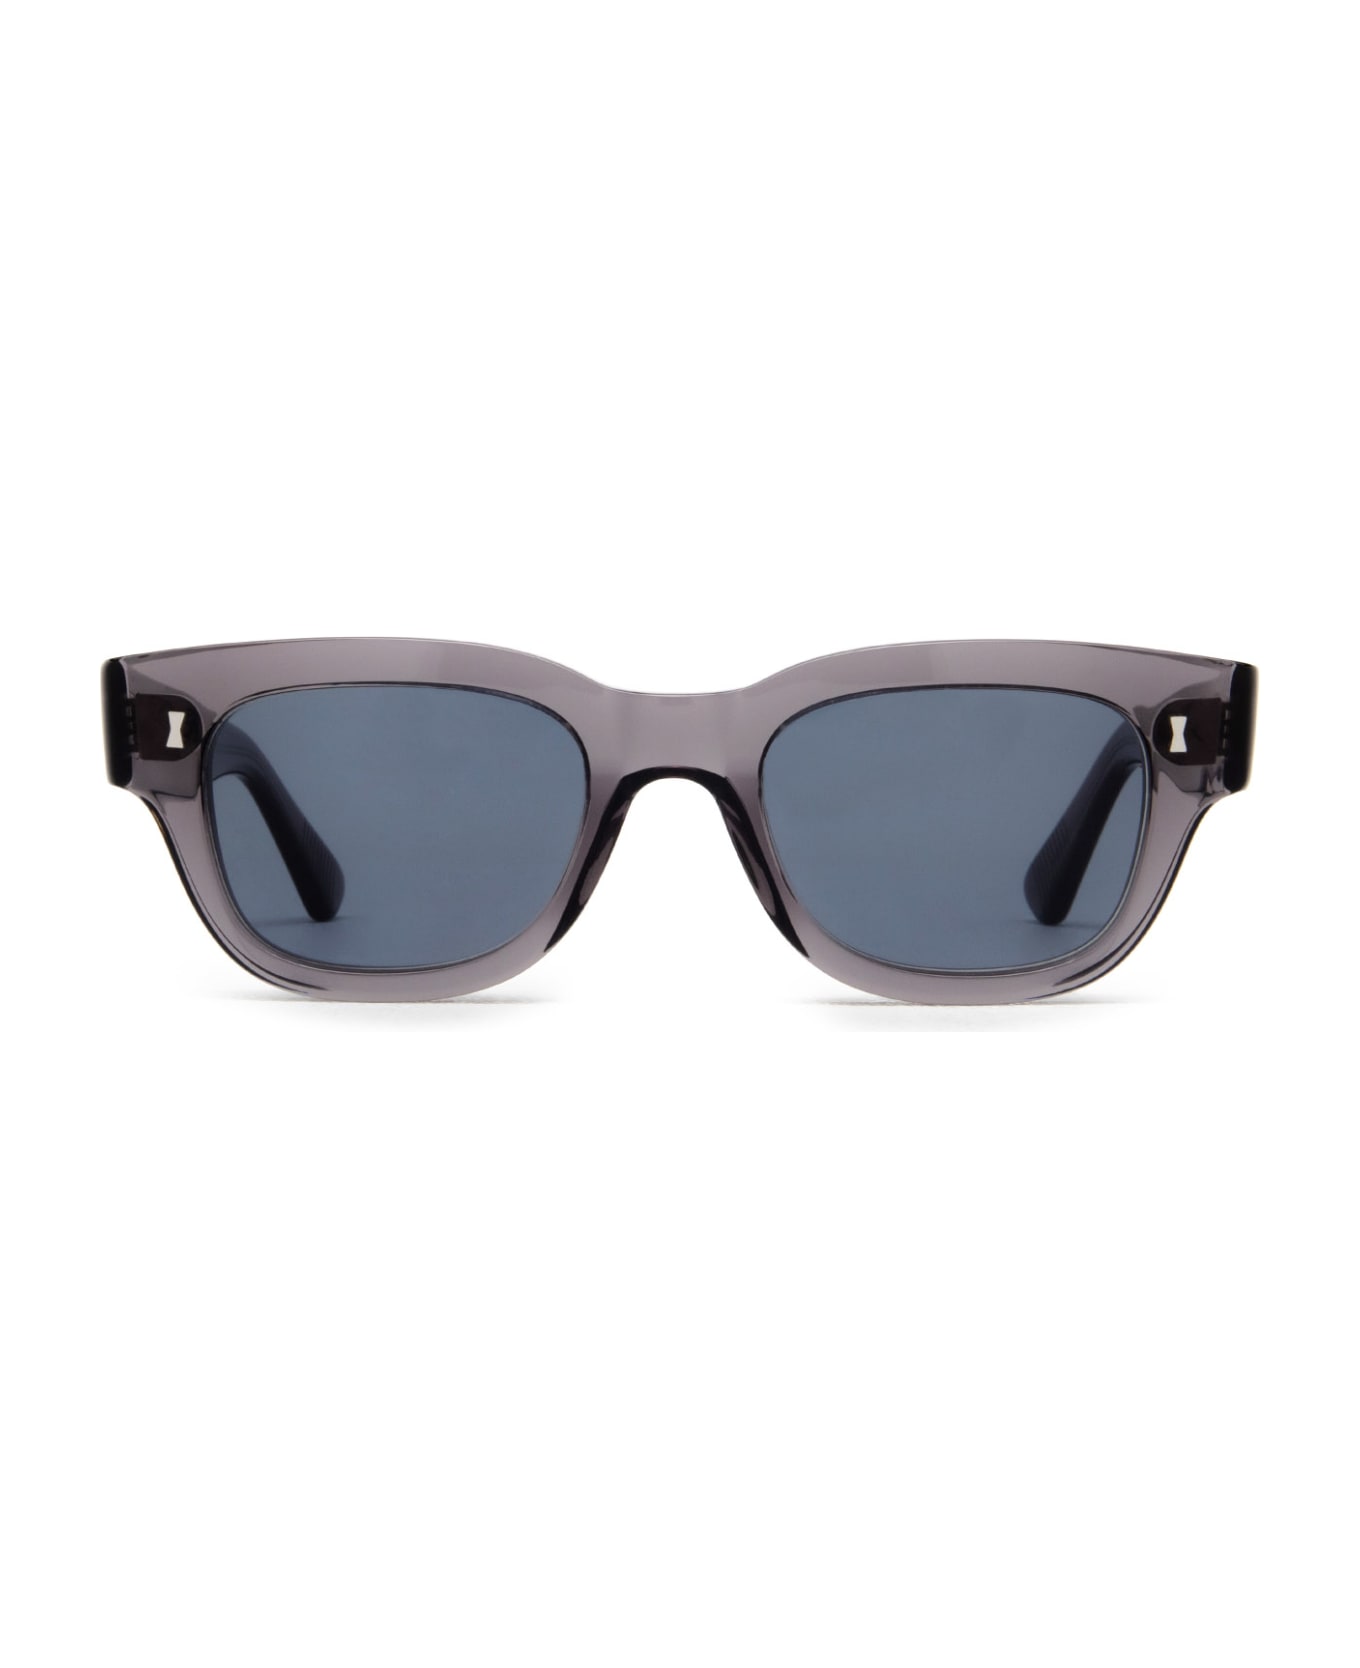 Cubitts Frederick Sun Smoke Grey Sunglasses - Smoke Grey サングラス